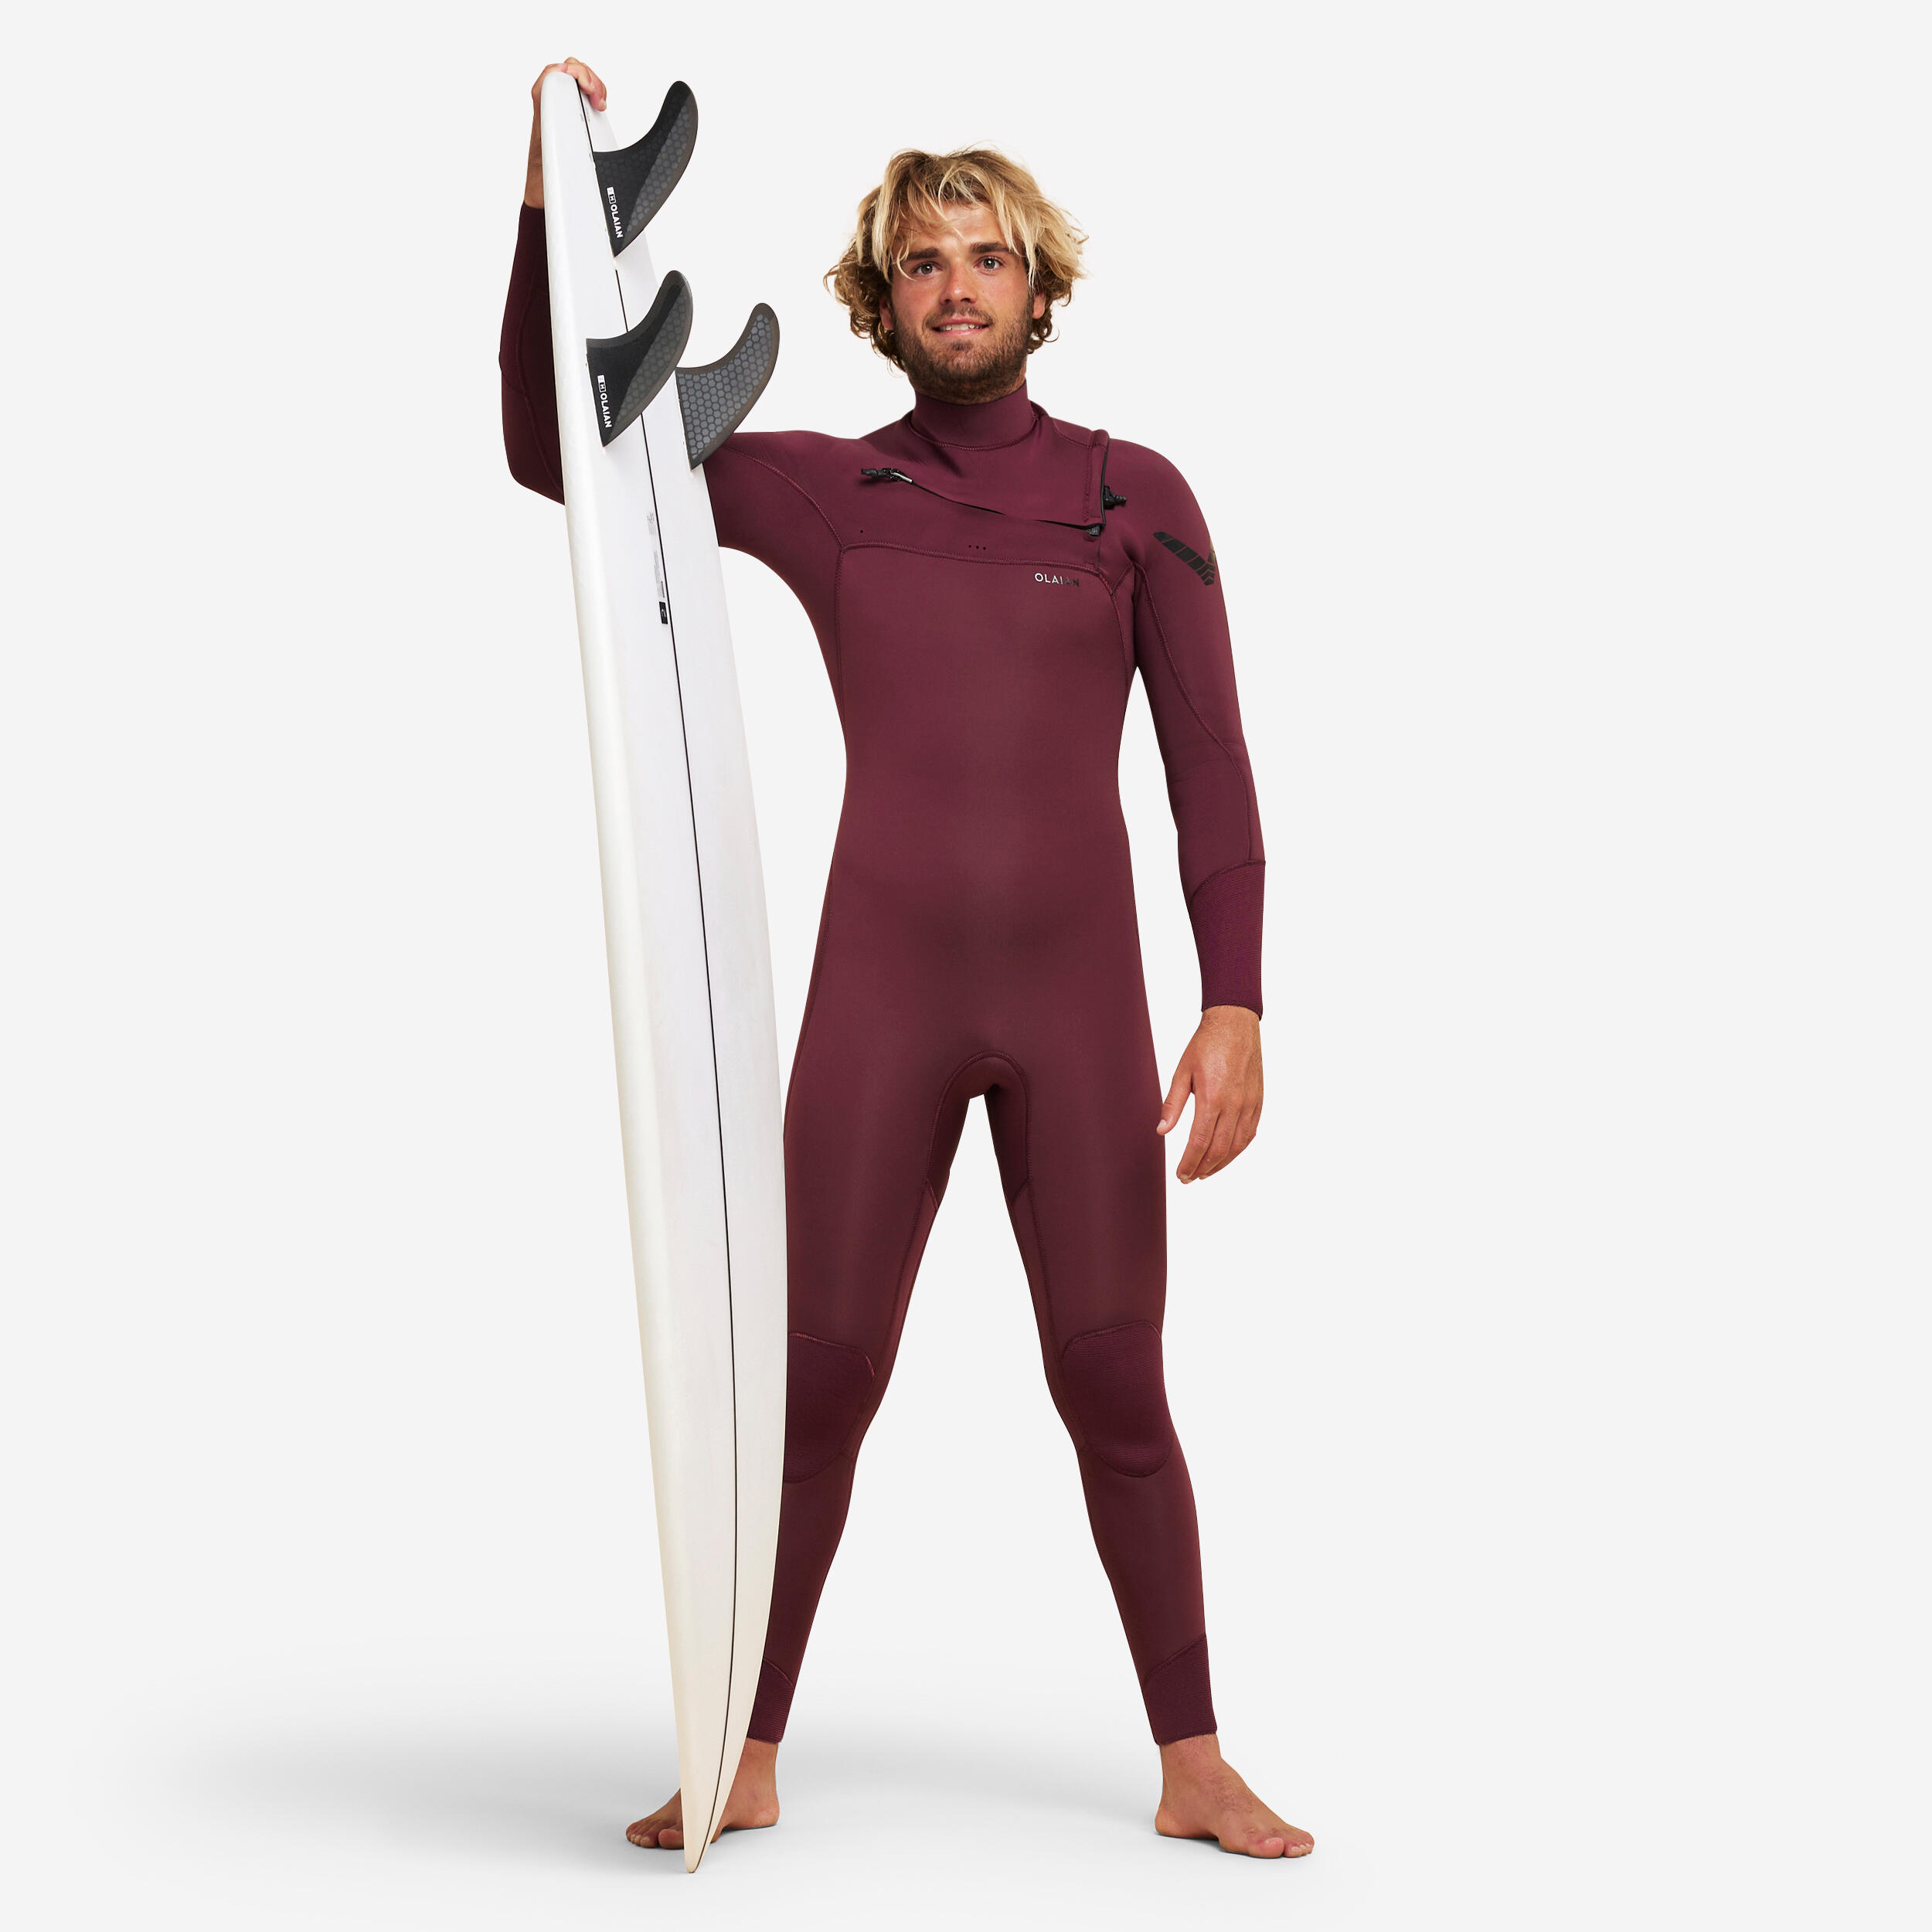 OLAIAN Men's surfing 4/3 mm neoprene wetsuit - 900 burgundy